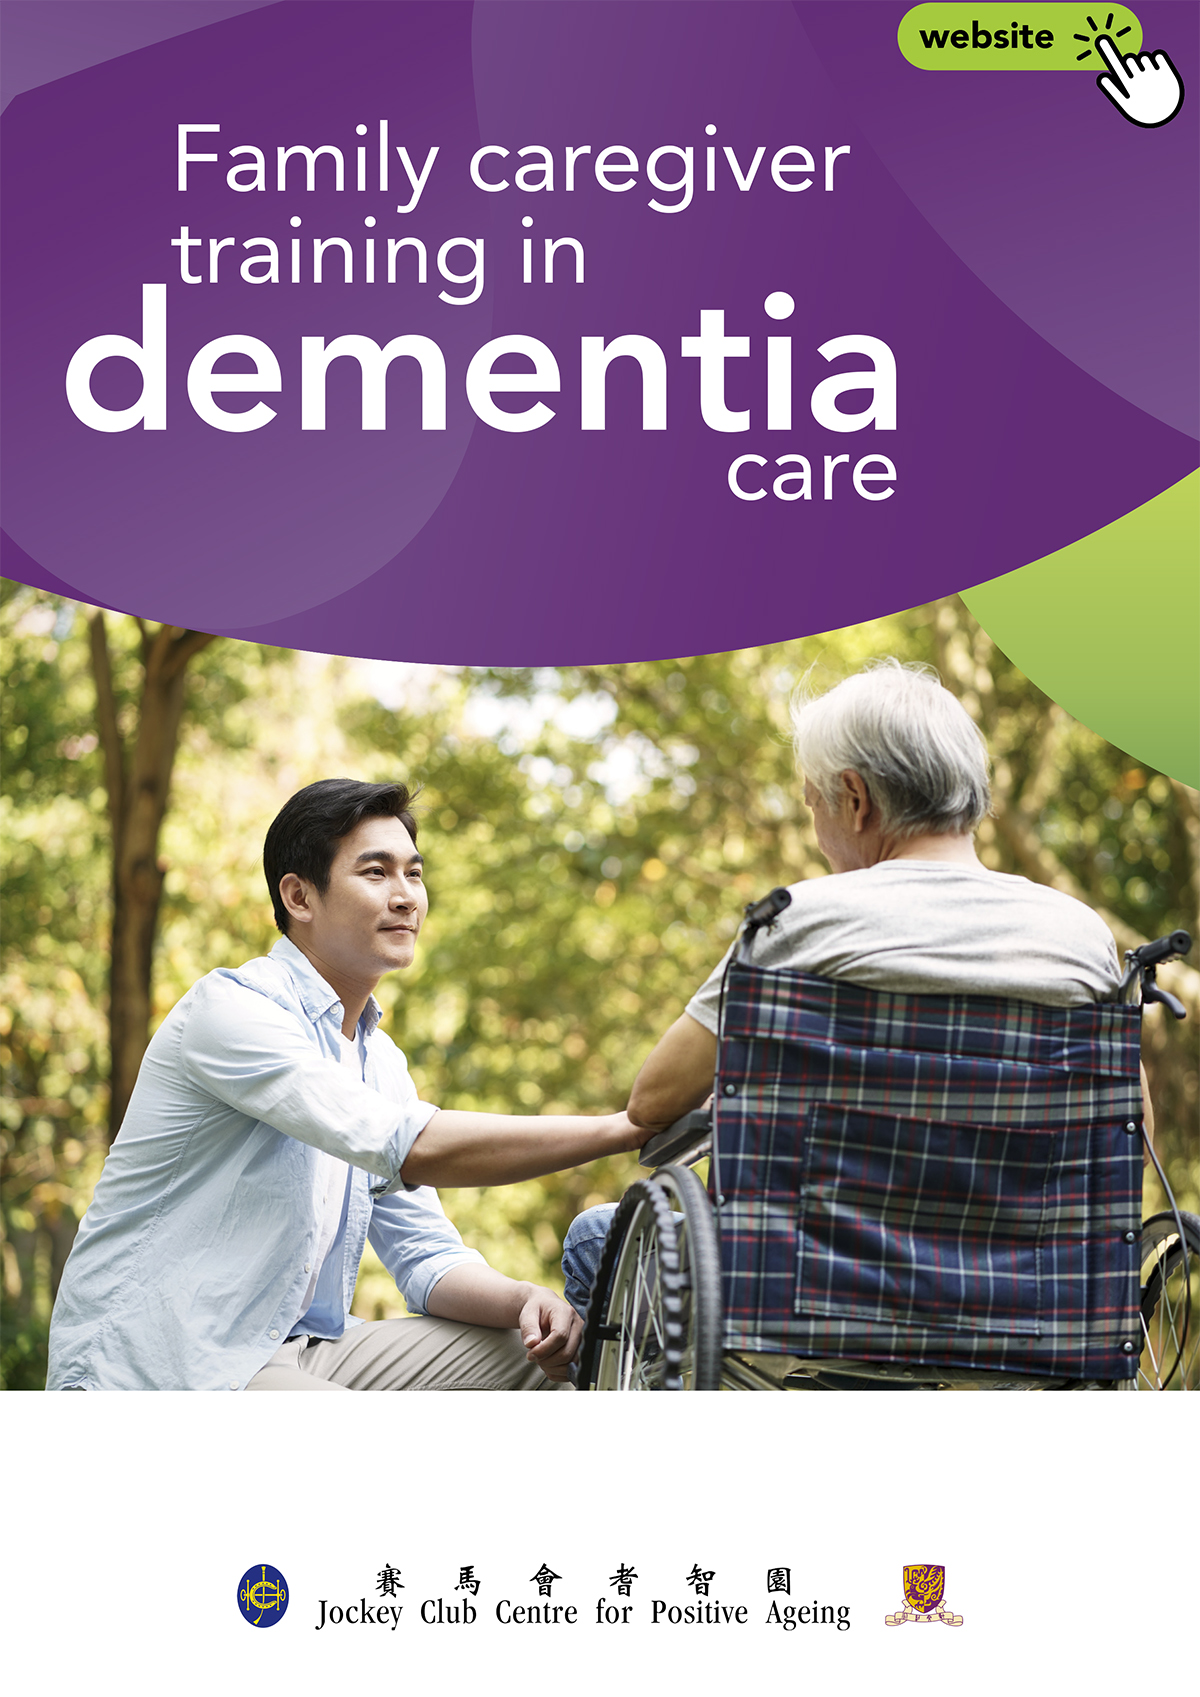 dementia care, family caregiving